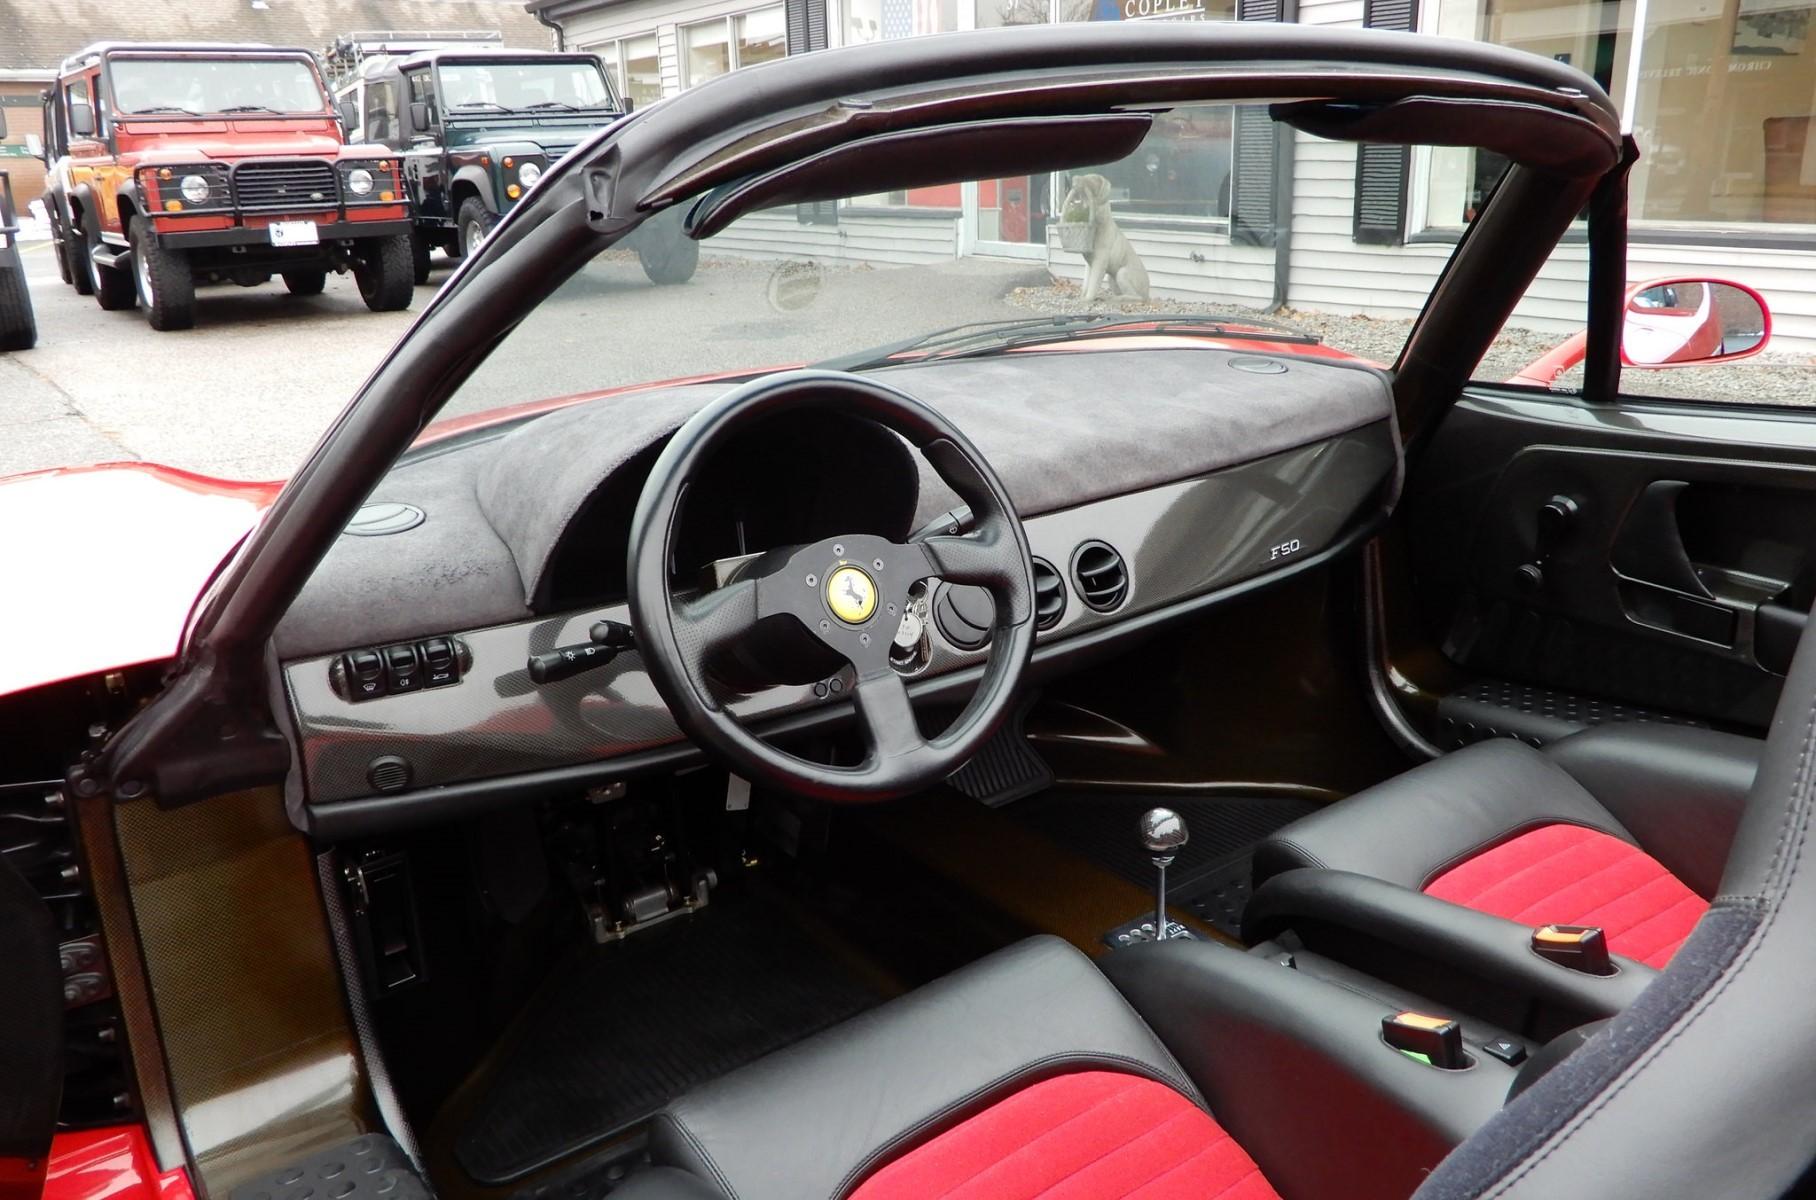 Най-редкият суперкар на Ferrari от 90-те беше пуснат за продажба на 02.02.2020 г.